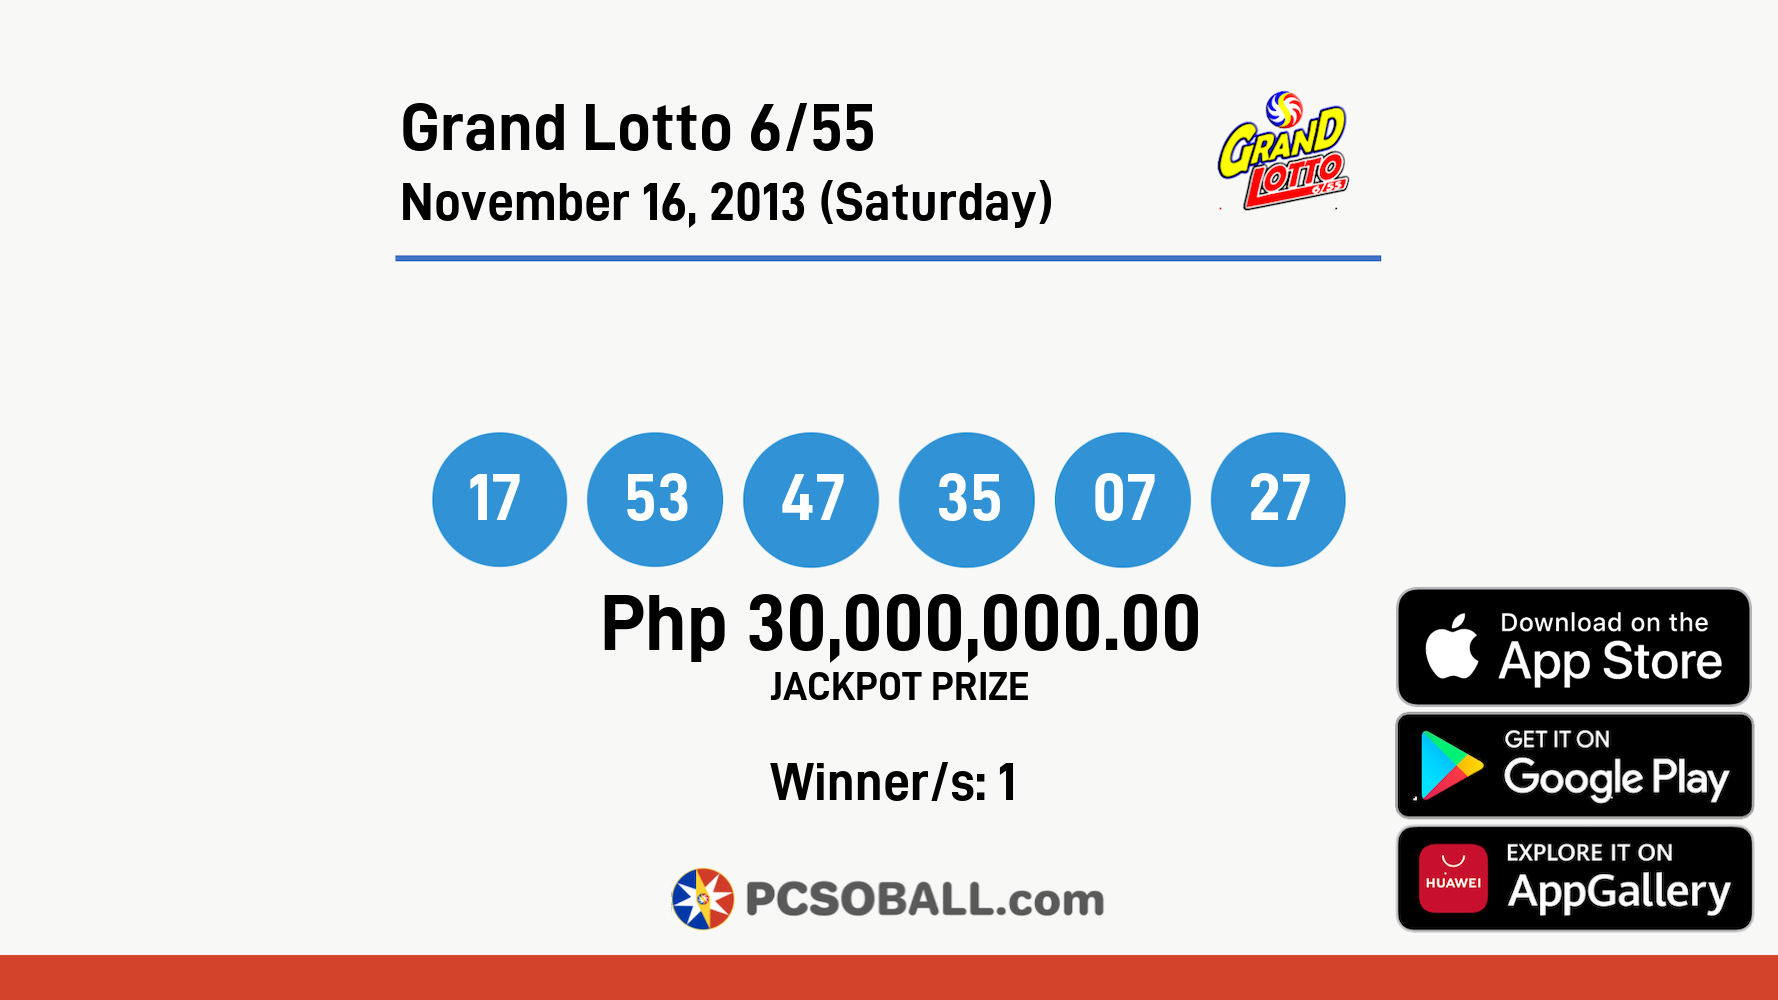 Grand Lotto 6/55 November 16, 2013 (Saturday) Result